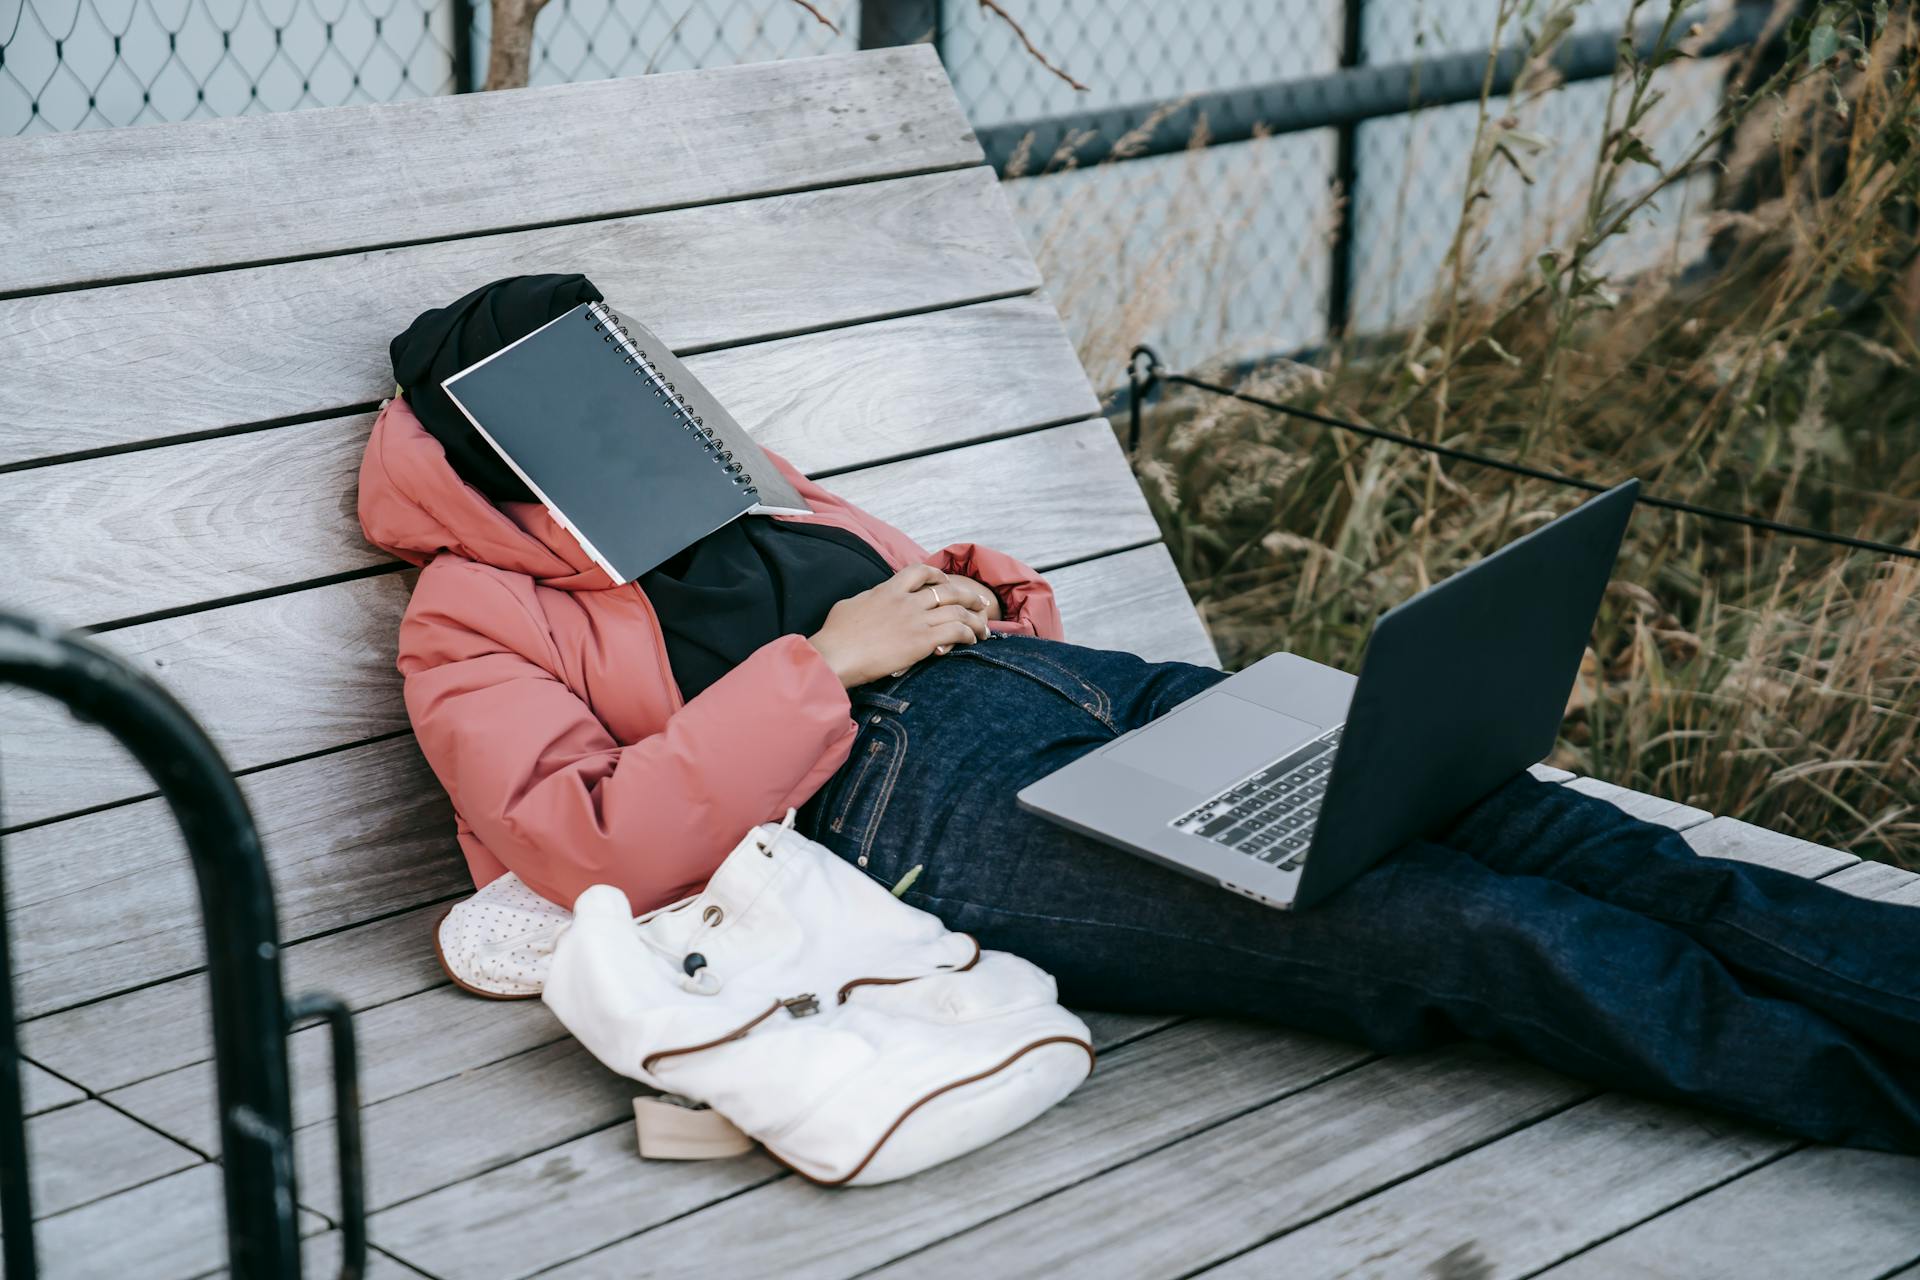 Eine unerkennbare Frau mit einem aufgeklappten Laptop, die sich auf einer Bank ausruht, mit einem Buch im Gesicht | Quelle: Pexels